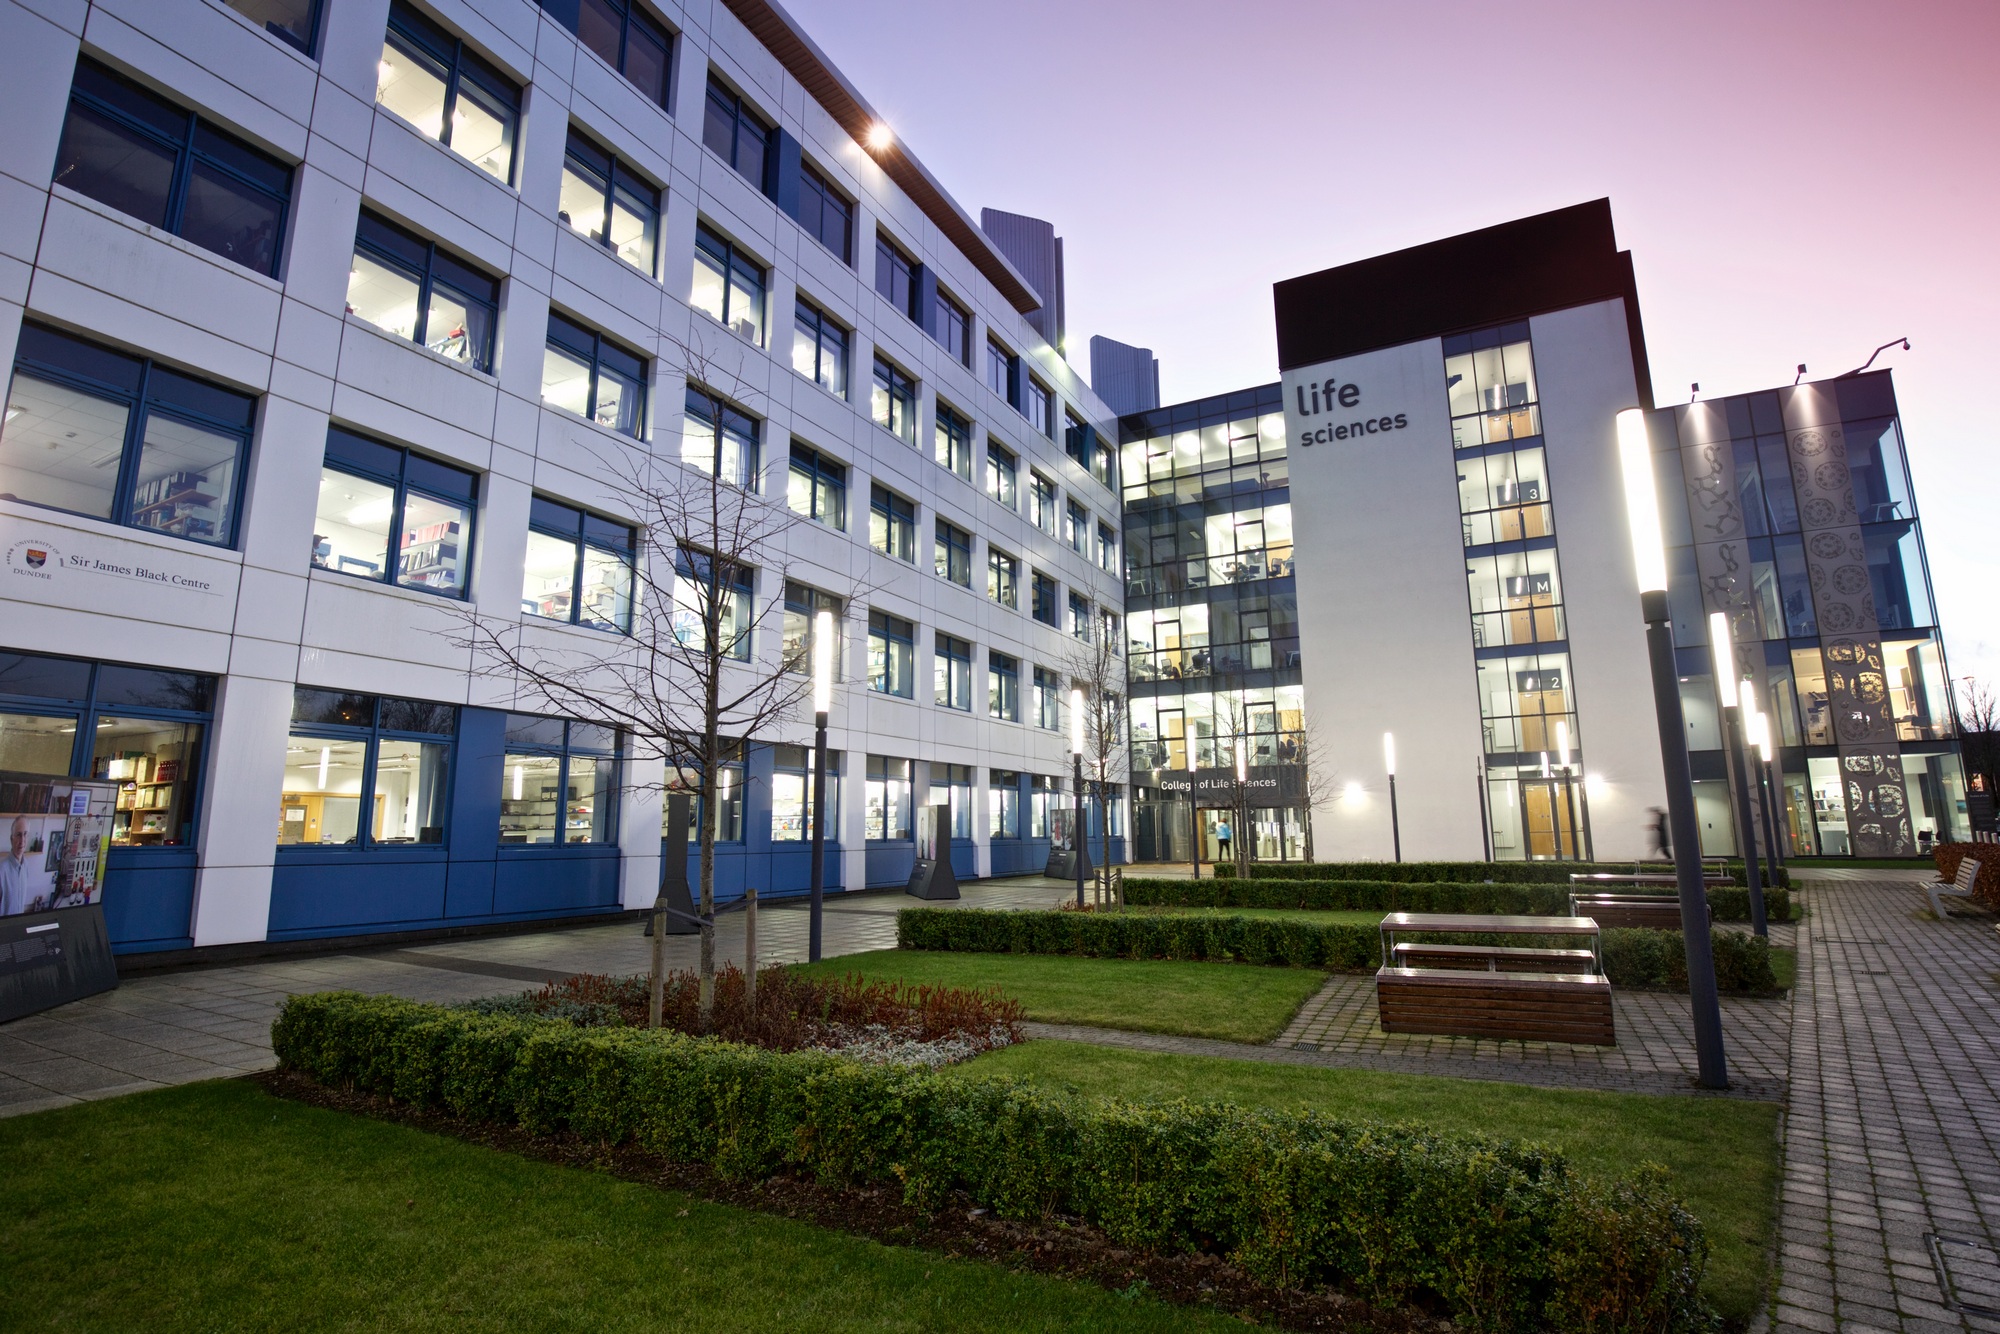 University of Dundee generating £975m added value for Scottish economy